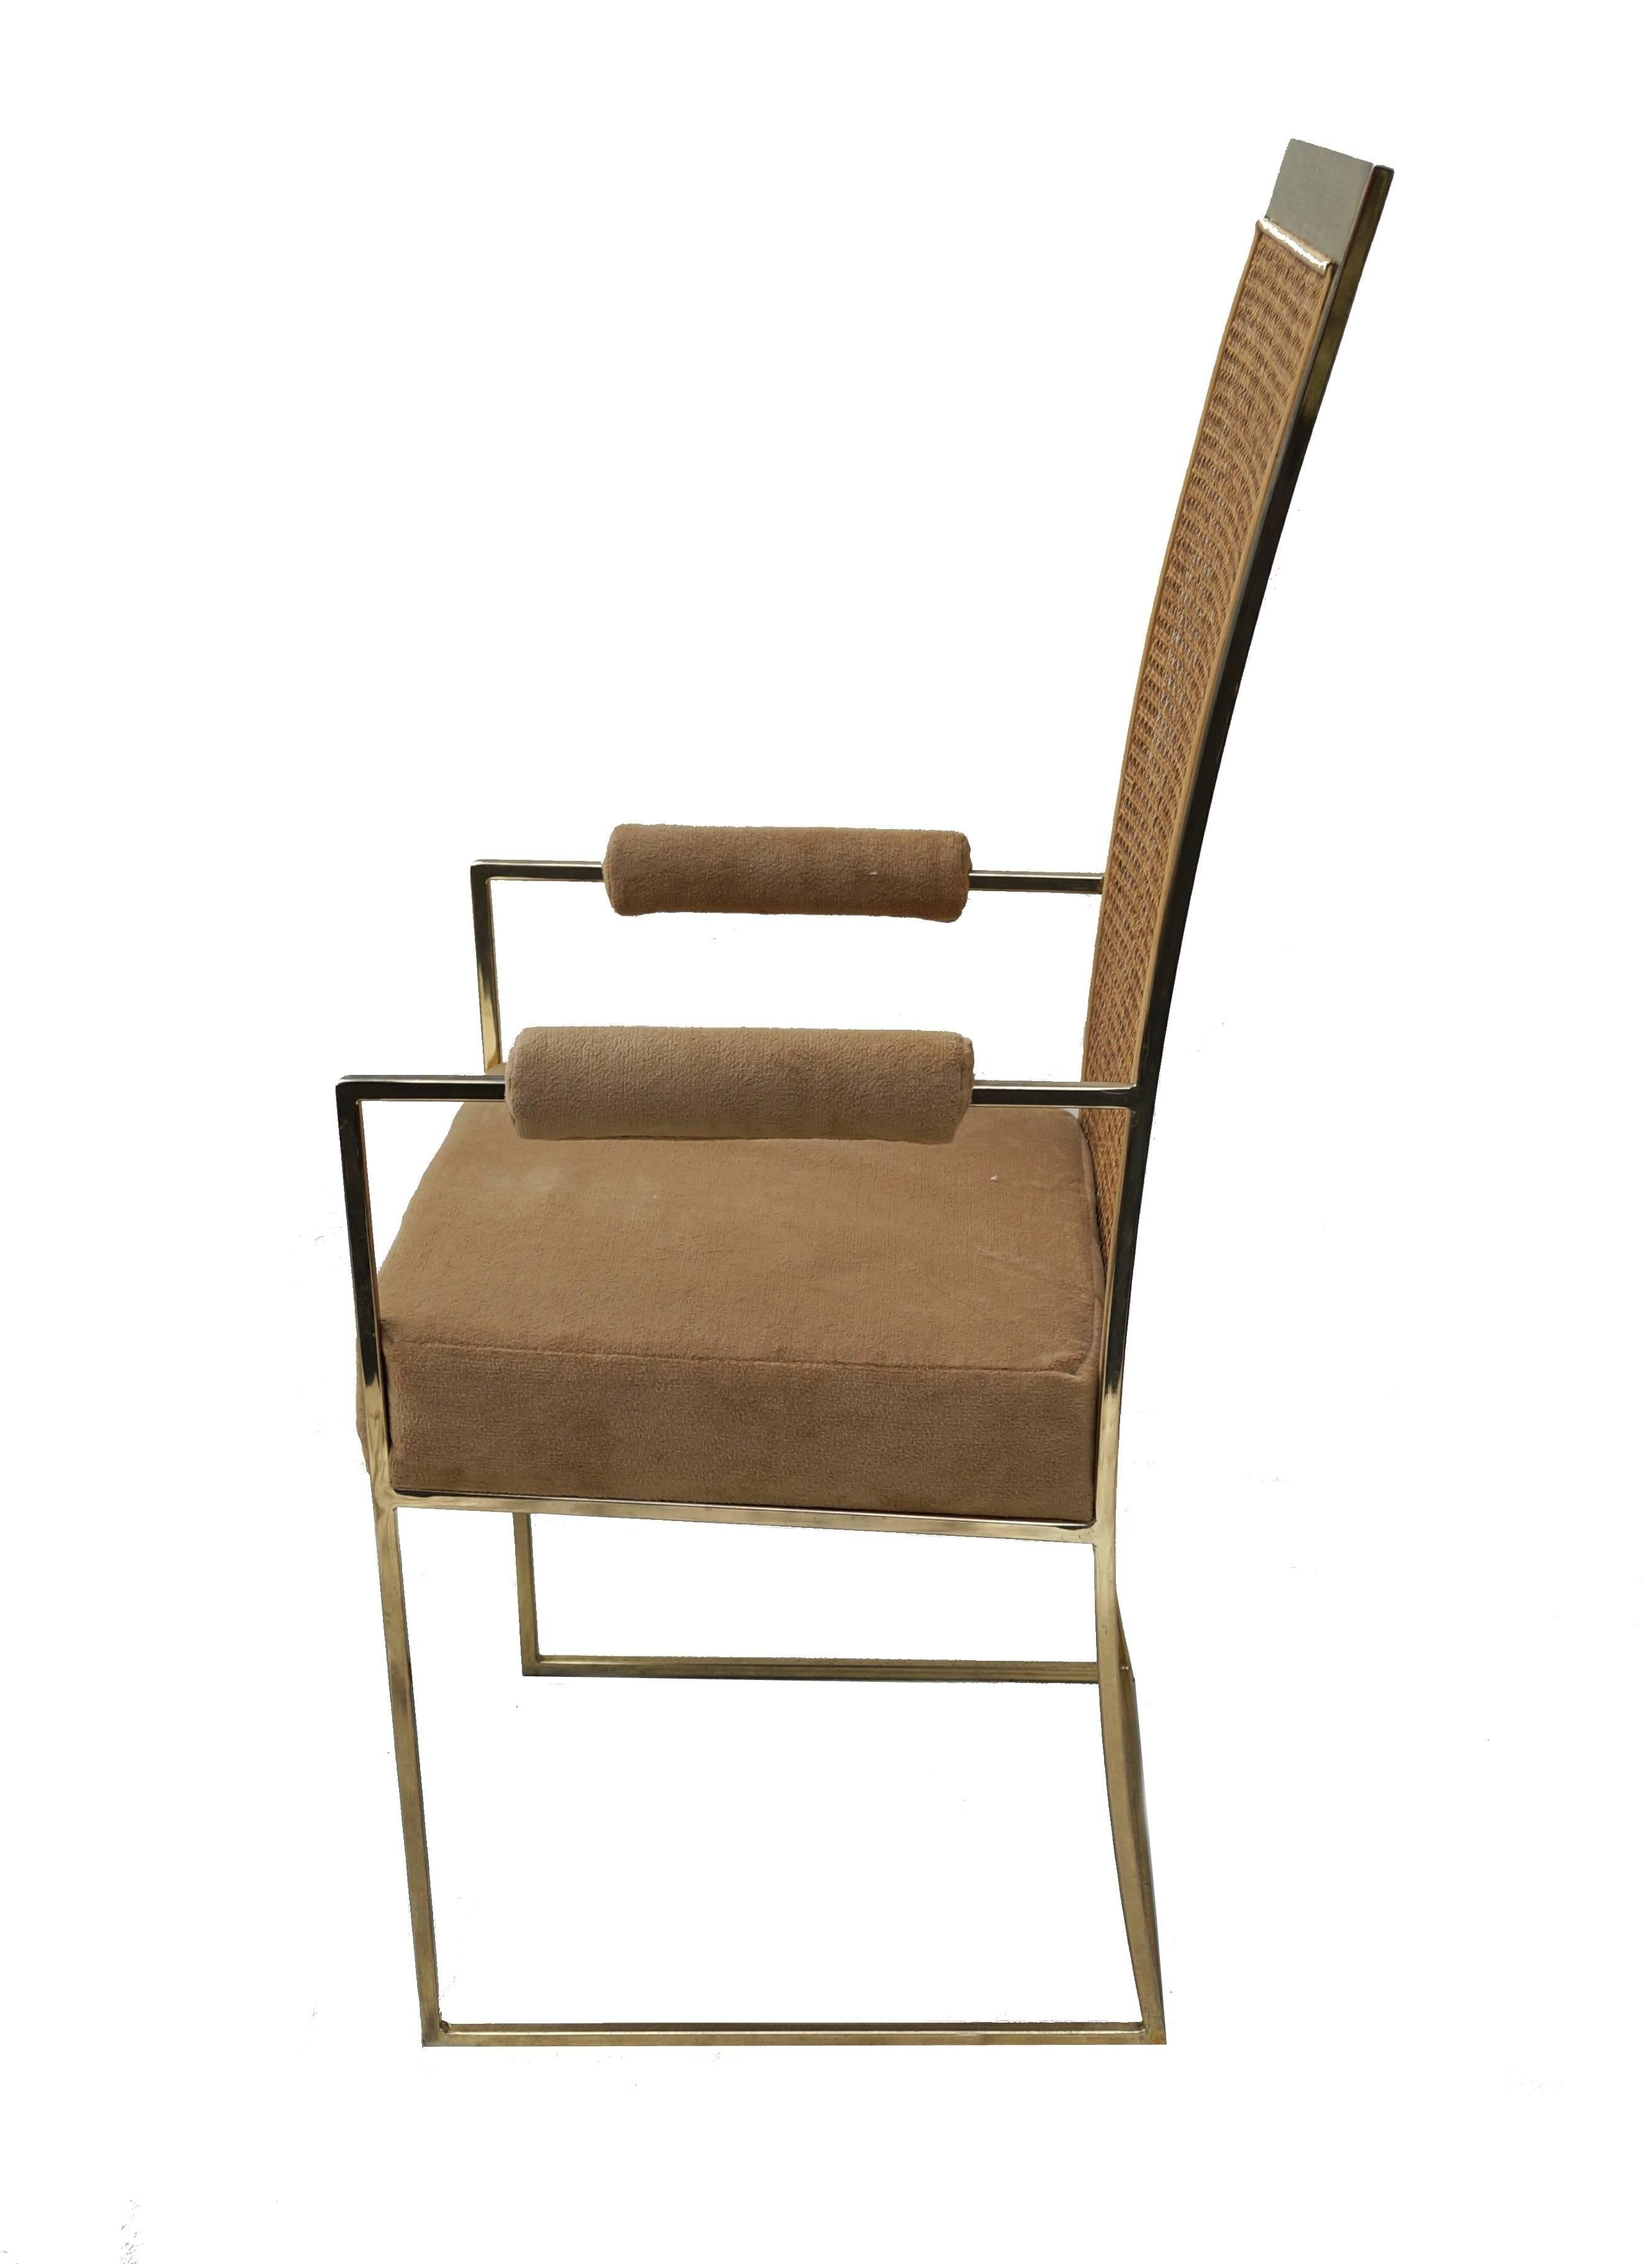 Ein Paar Milo Baughman Armlehnen- oder Esszimmerstühle. Wir haben ein zusätzliches Set von armlosen, passenden Stühlen in unseren anderen Artikeln. 